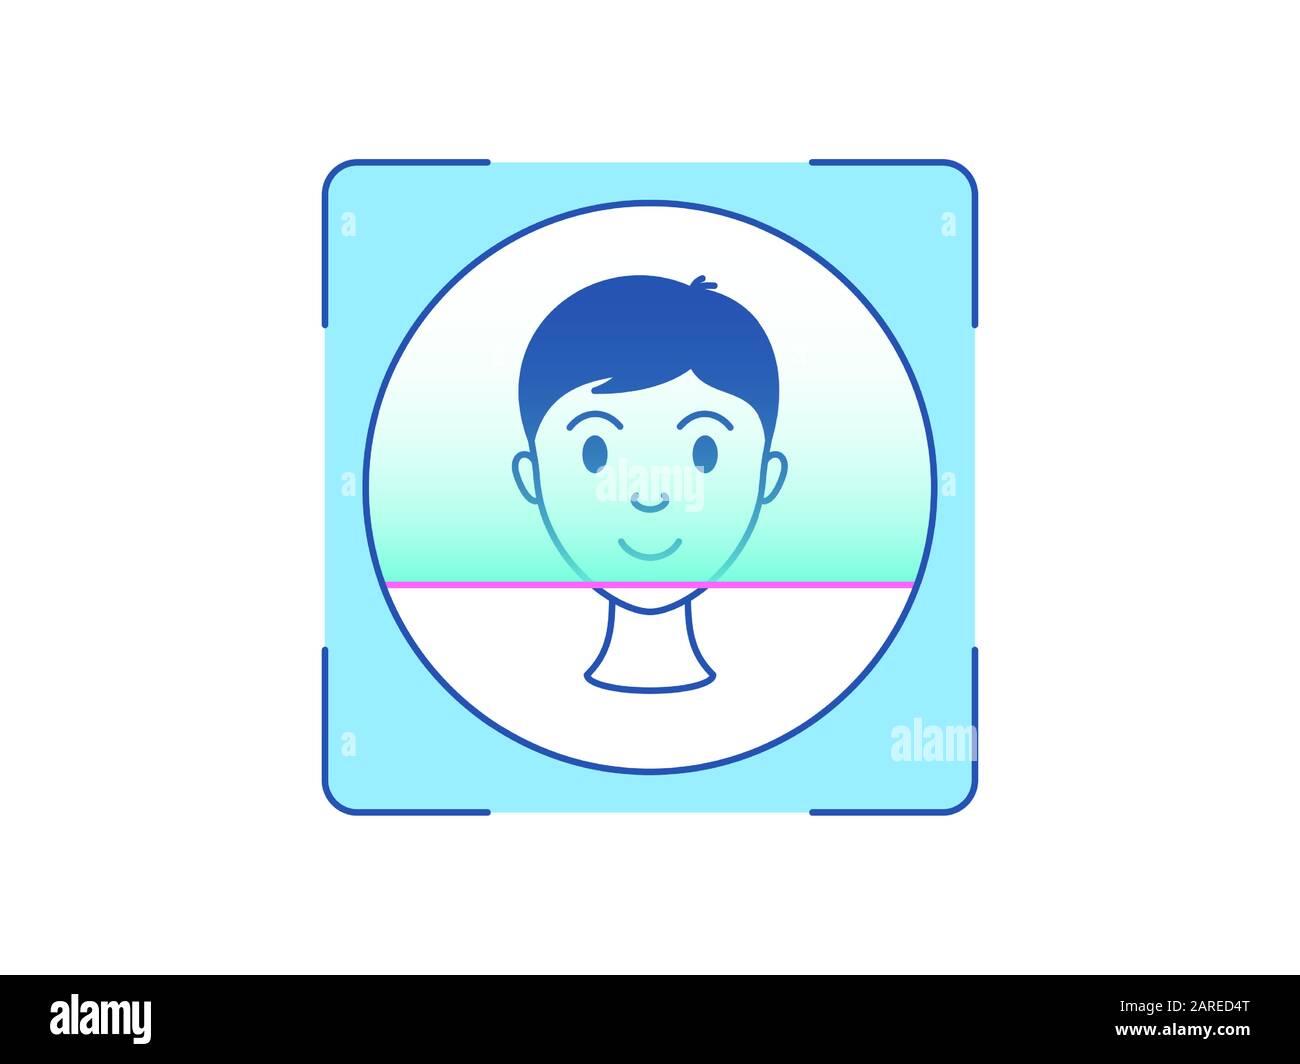 Riconoscimento del volto, icona. Sistema di scansione biometrica per la testa umana, interfaccia di identificazione della persona. Tecnologia Face ID. Riconoscimento del sistema e verif Illustrazione Vettoriale